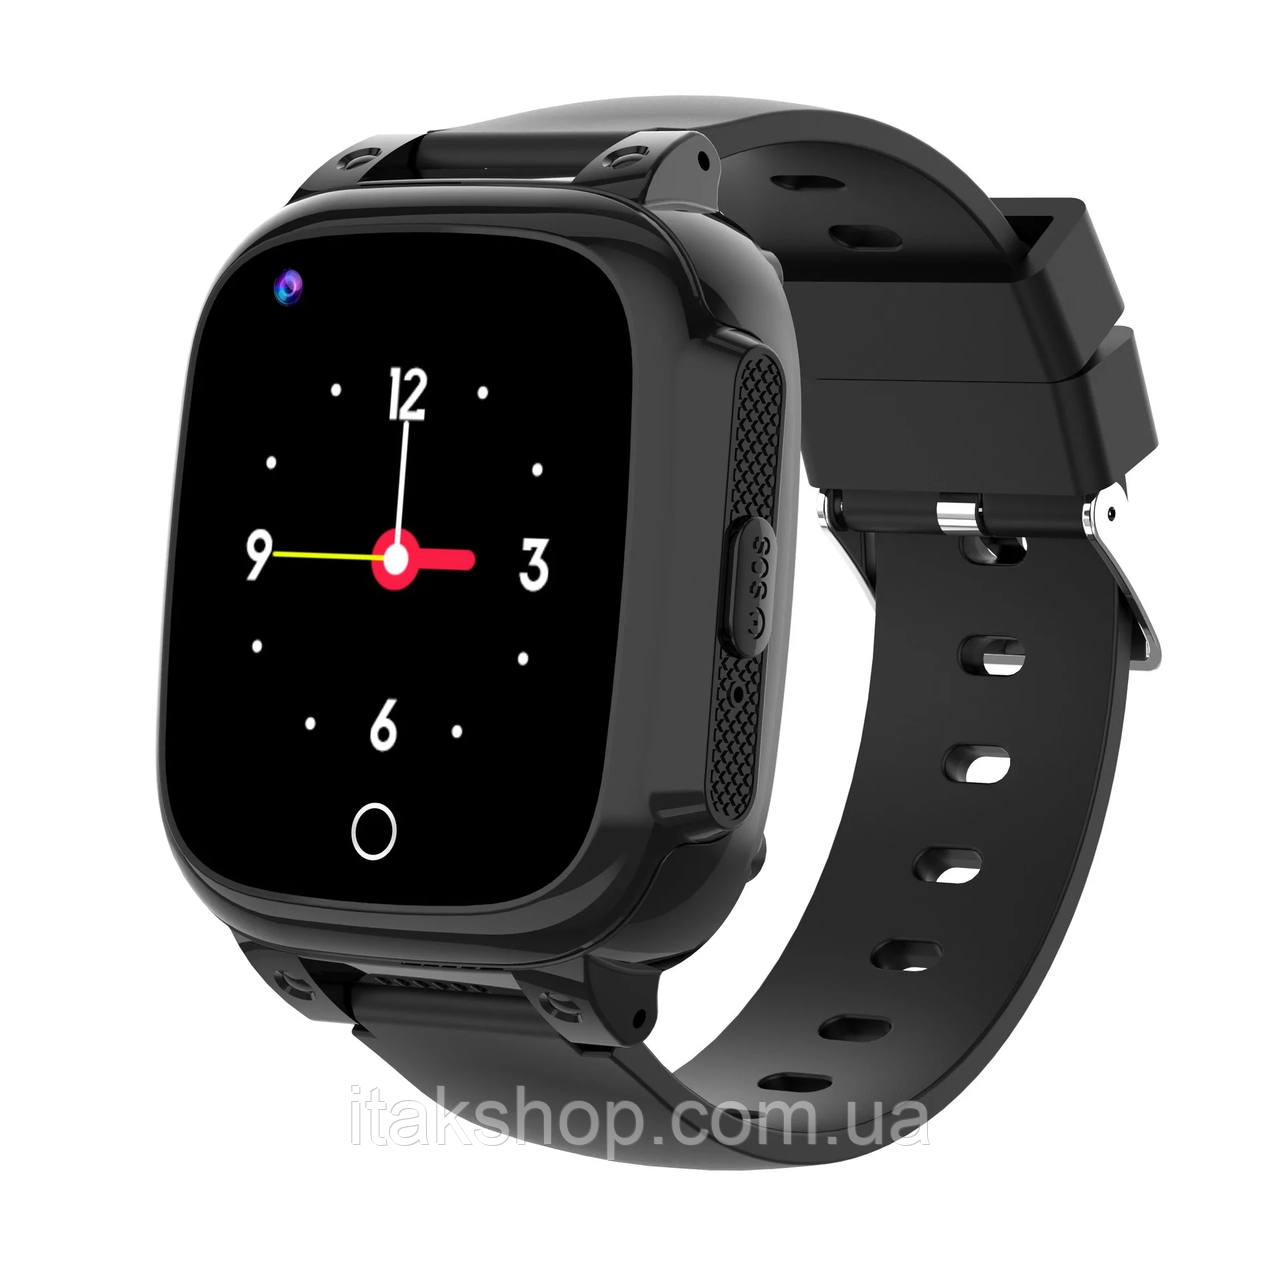 Дитячий наручний розумний годинник Smart Baby Watch Y95H 4G з GPS (Чорний)